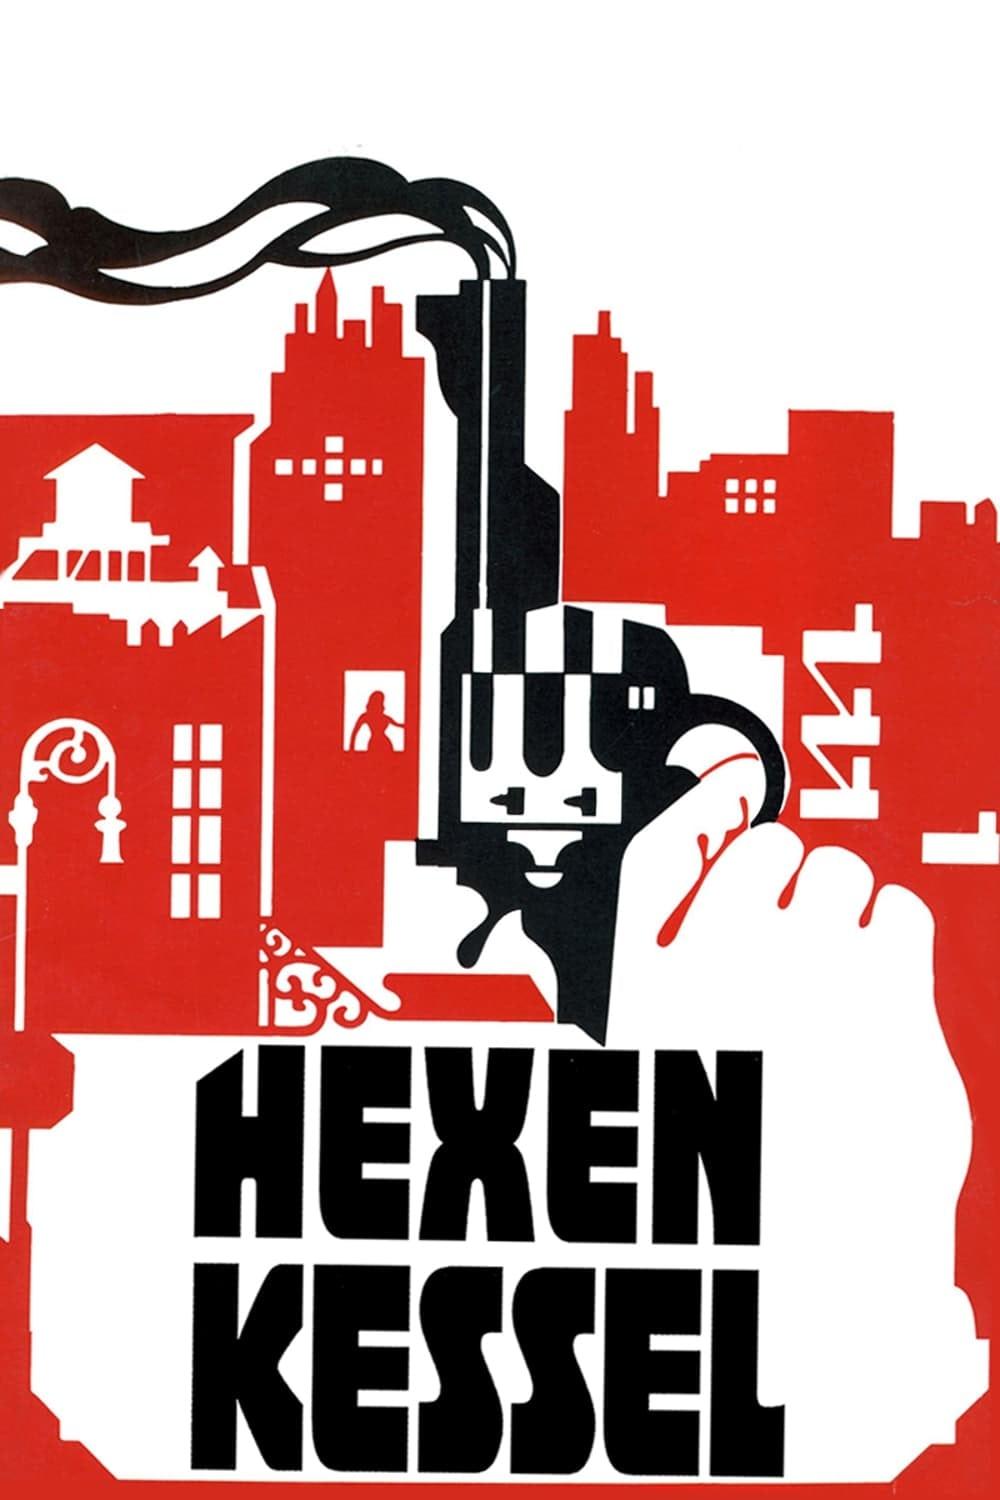 Hexenkessel poster